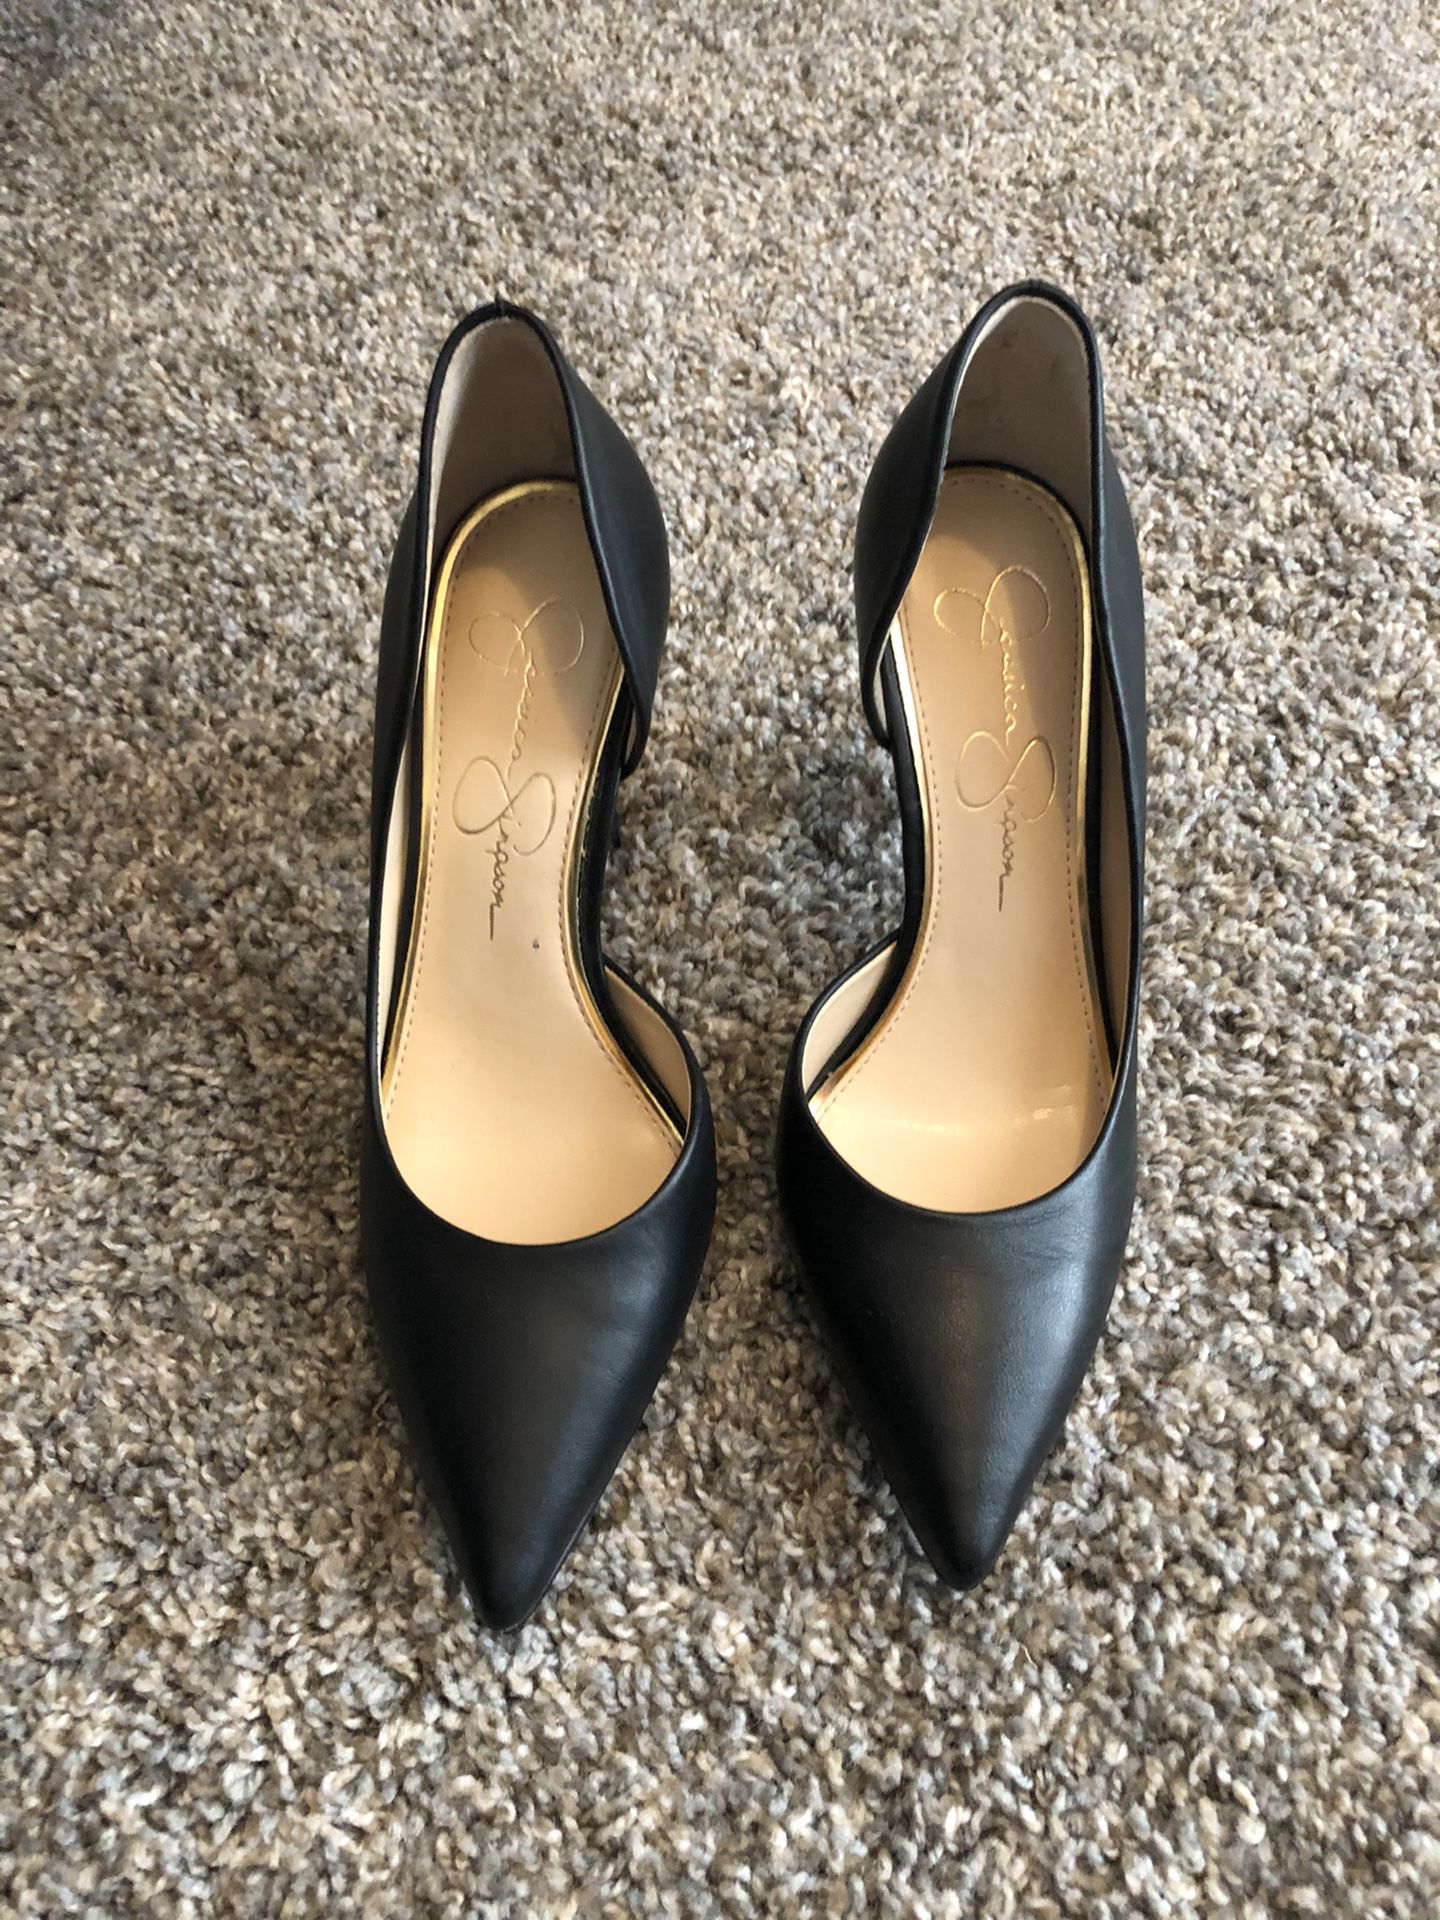 Jessica Simpson Claudette heels size 6